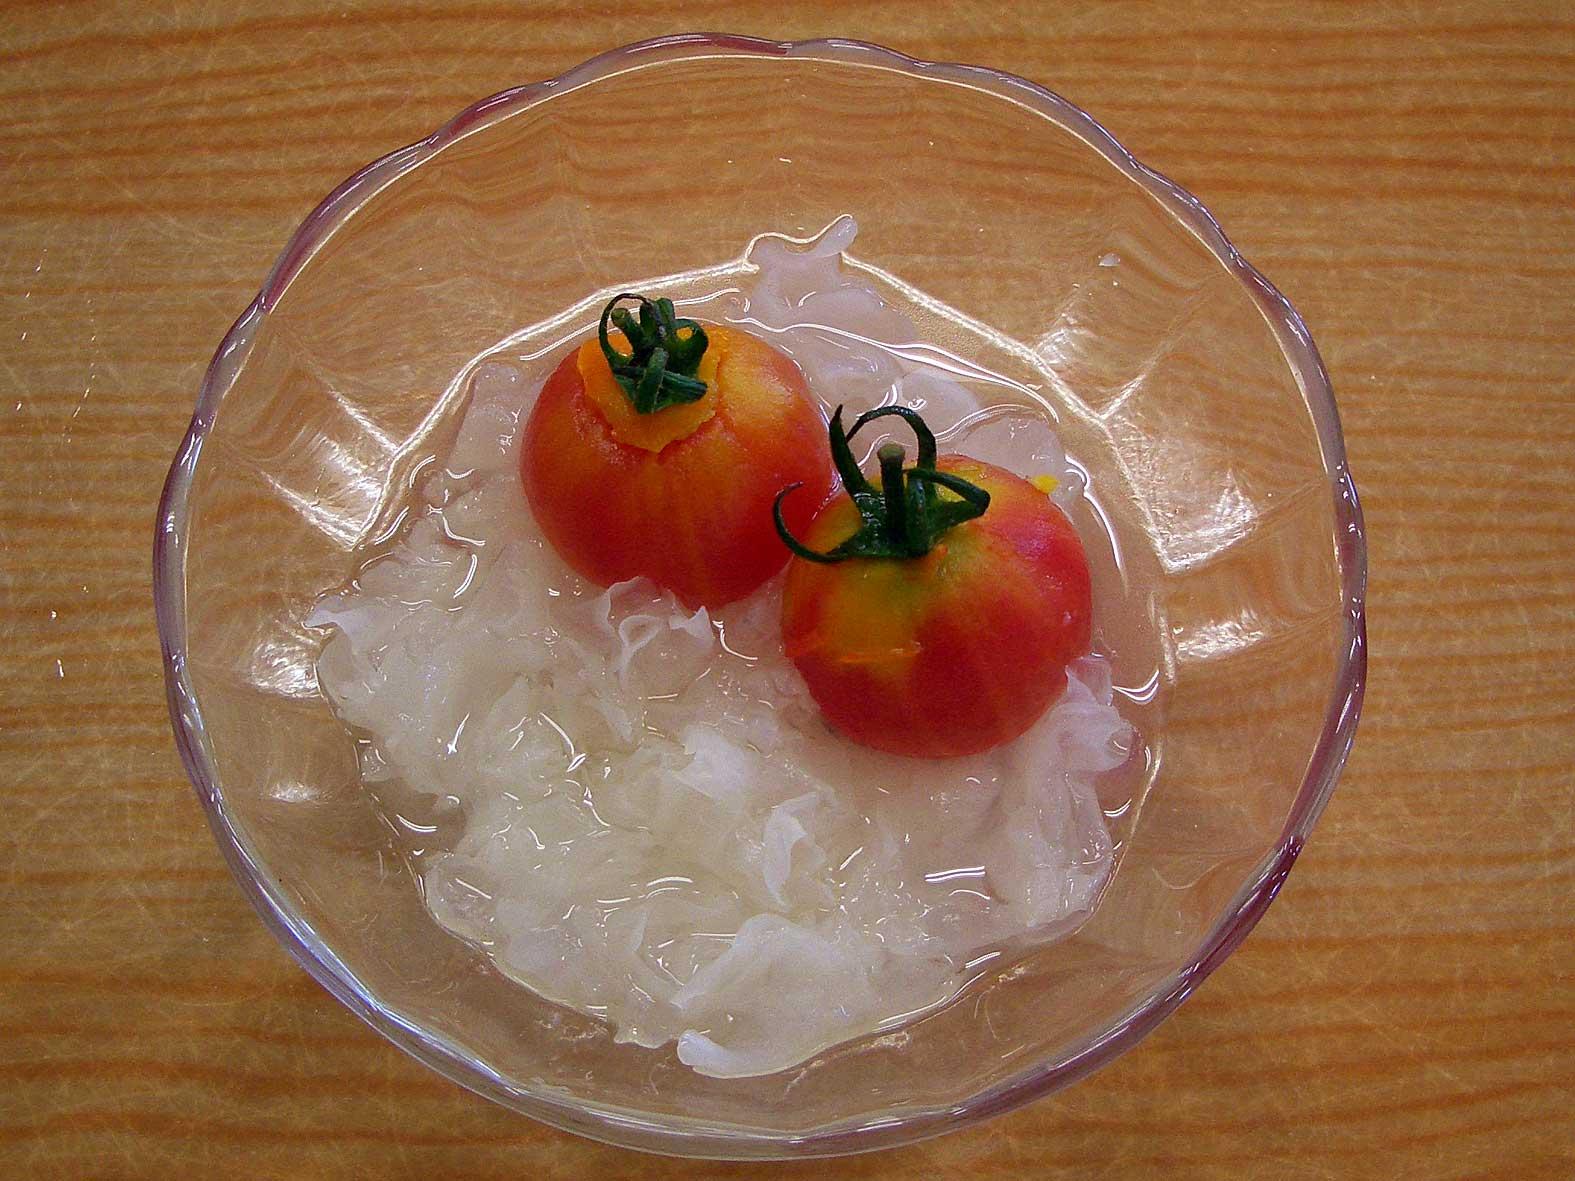 シロップ漬けされた白きくらげの上にミニトマトが盛り付けられている写真